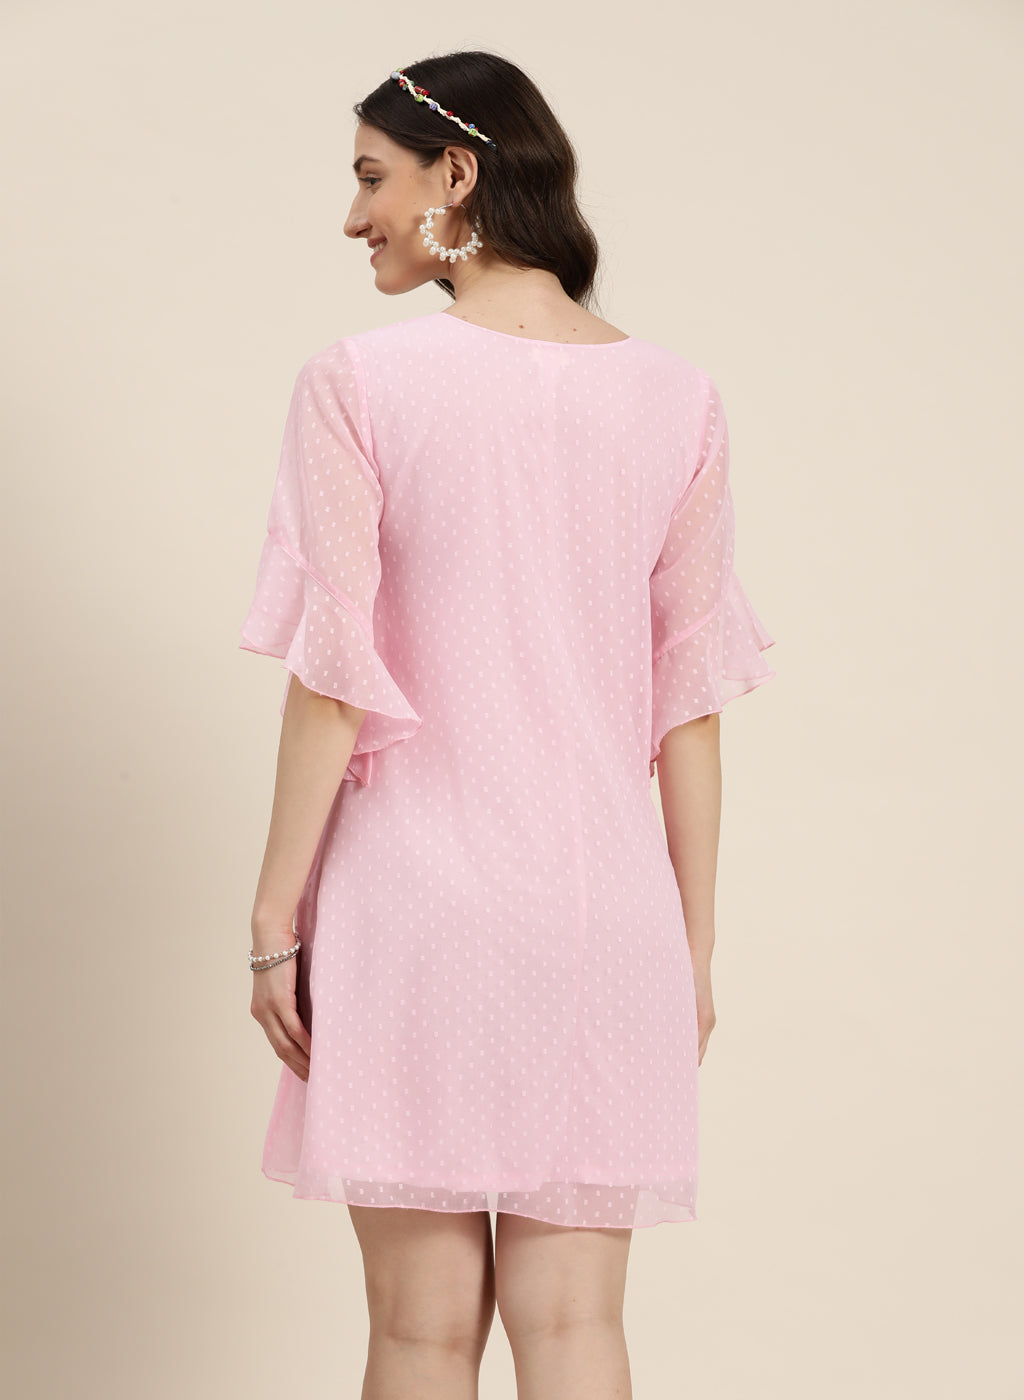 A-line pink swiss dot georgette dress